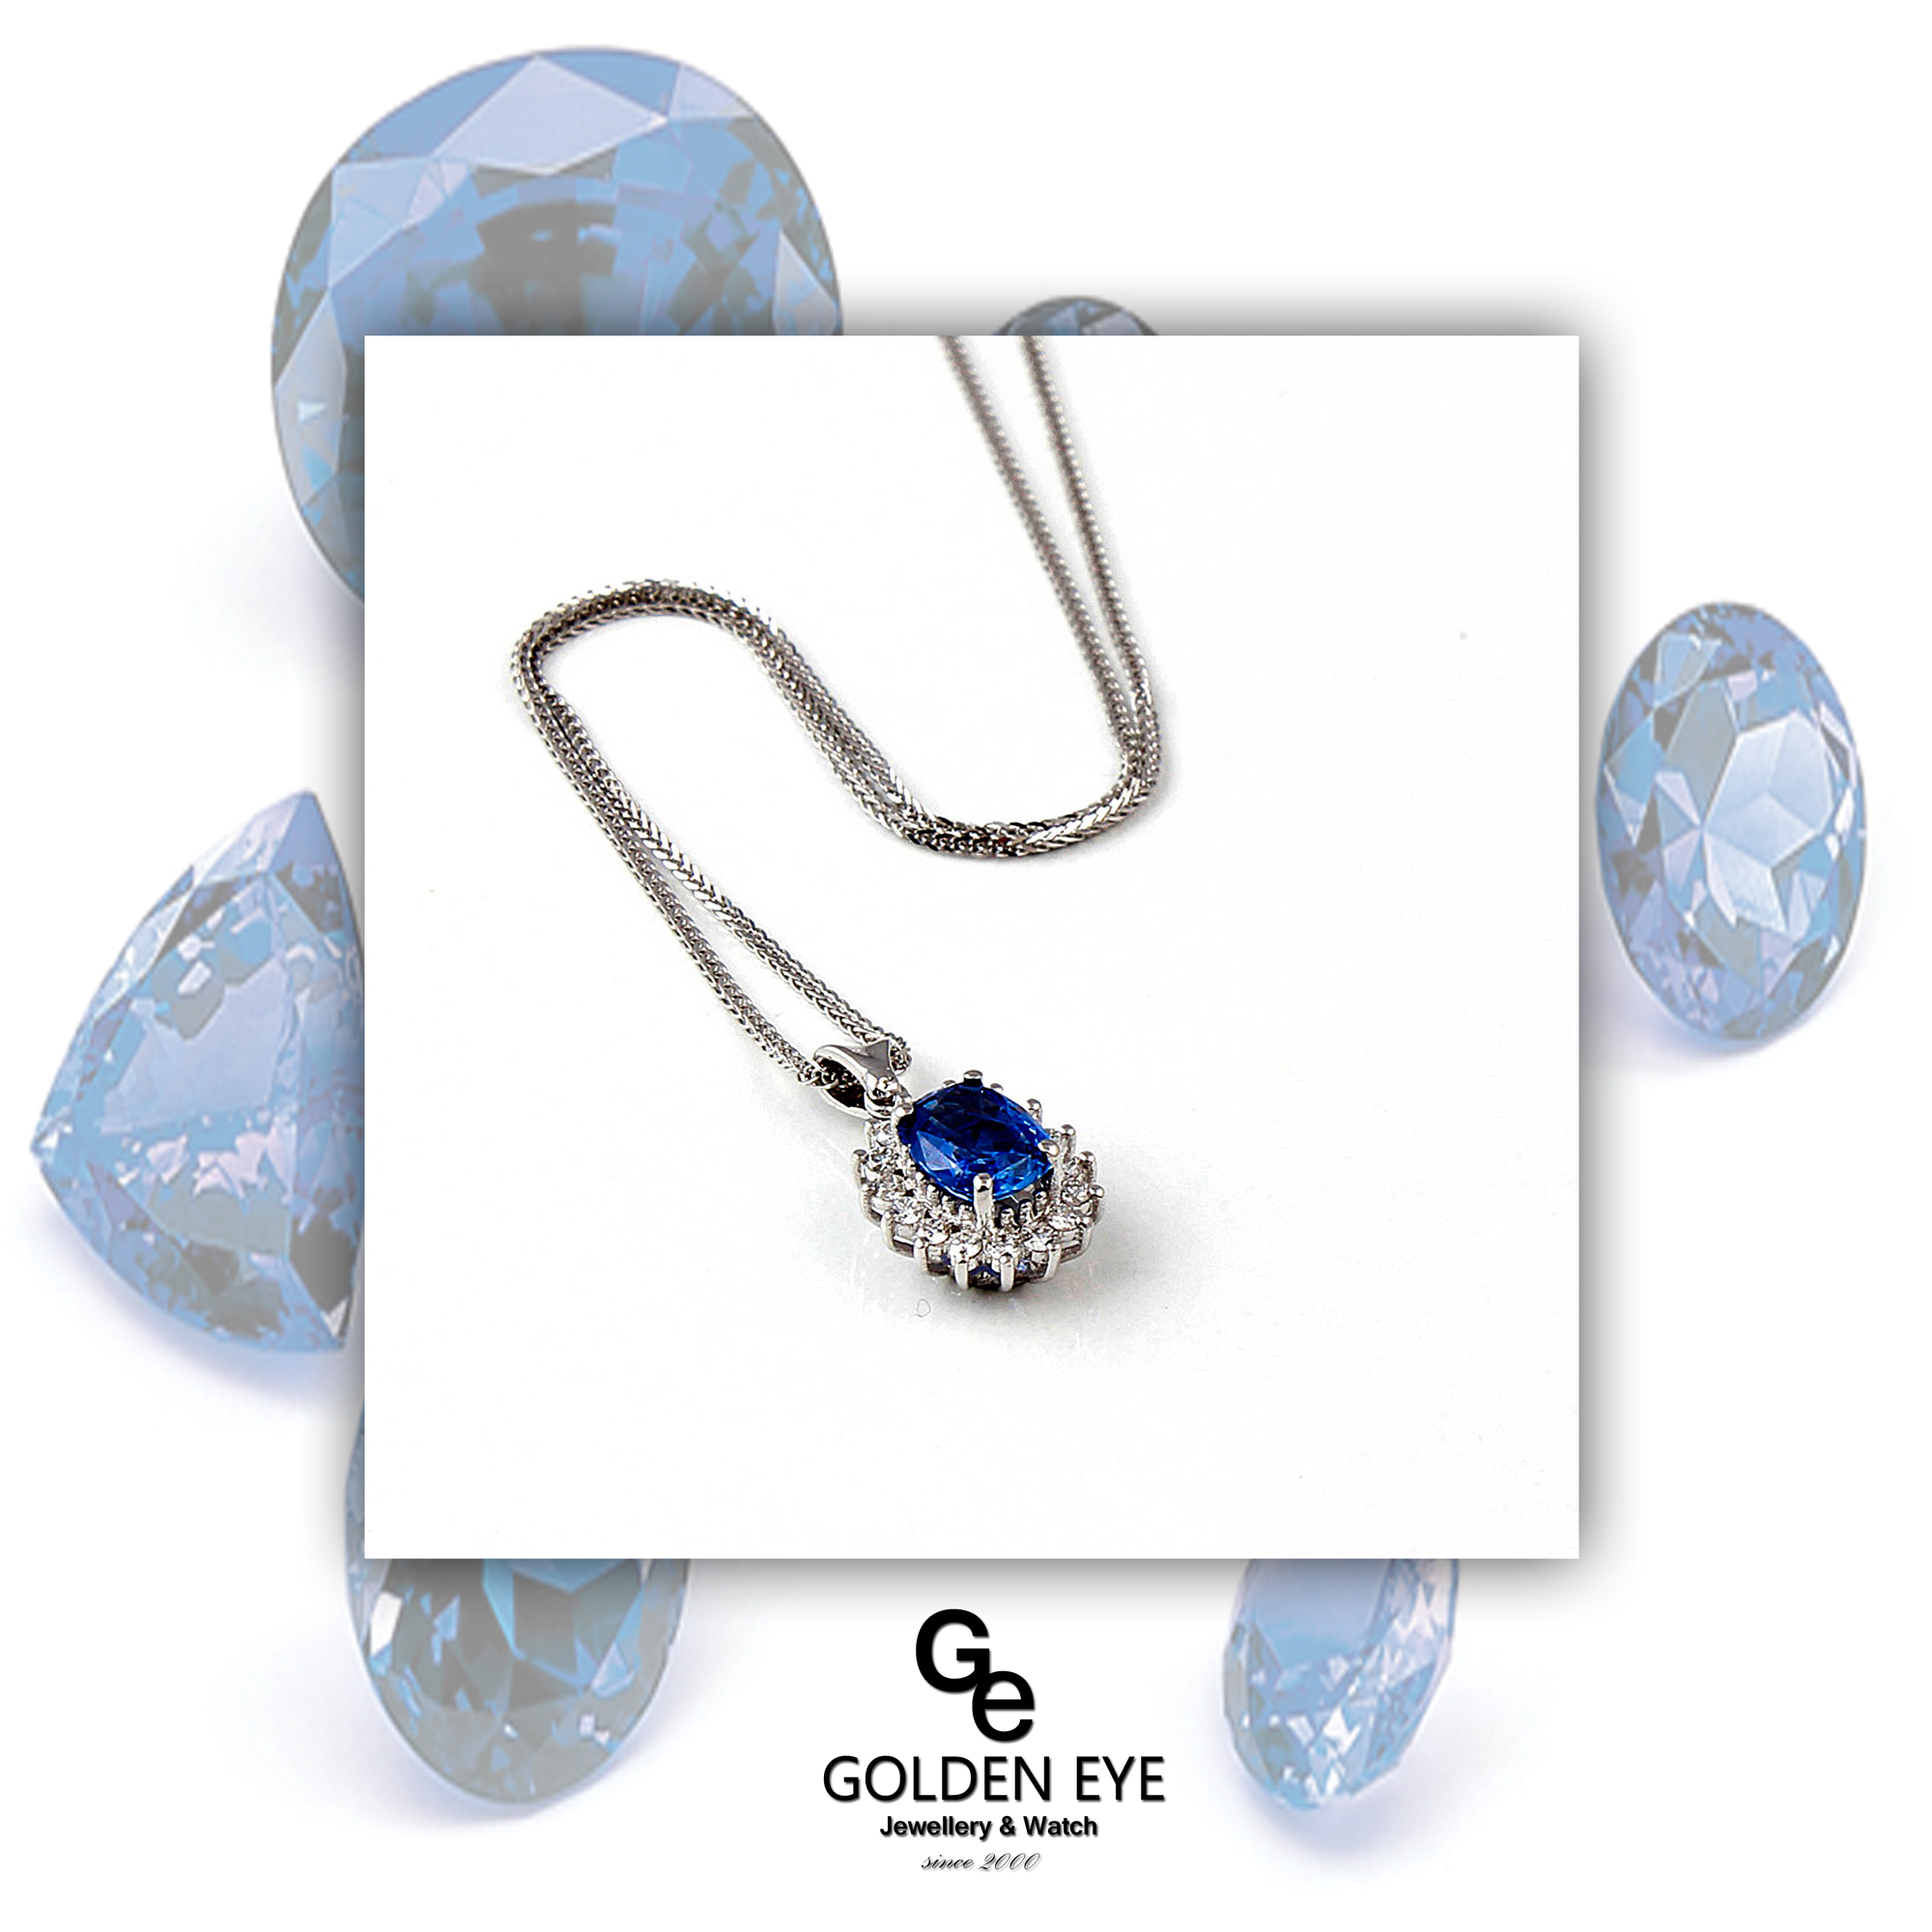 G02A vit guld pendent med Blue Saphire och diamanter